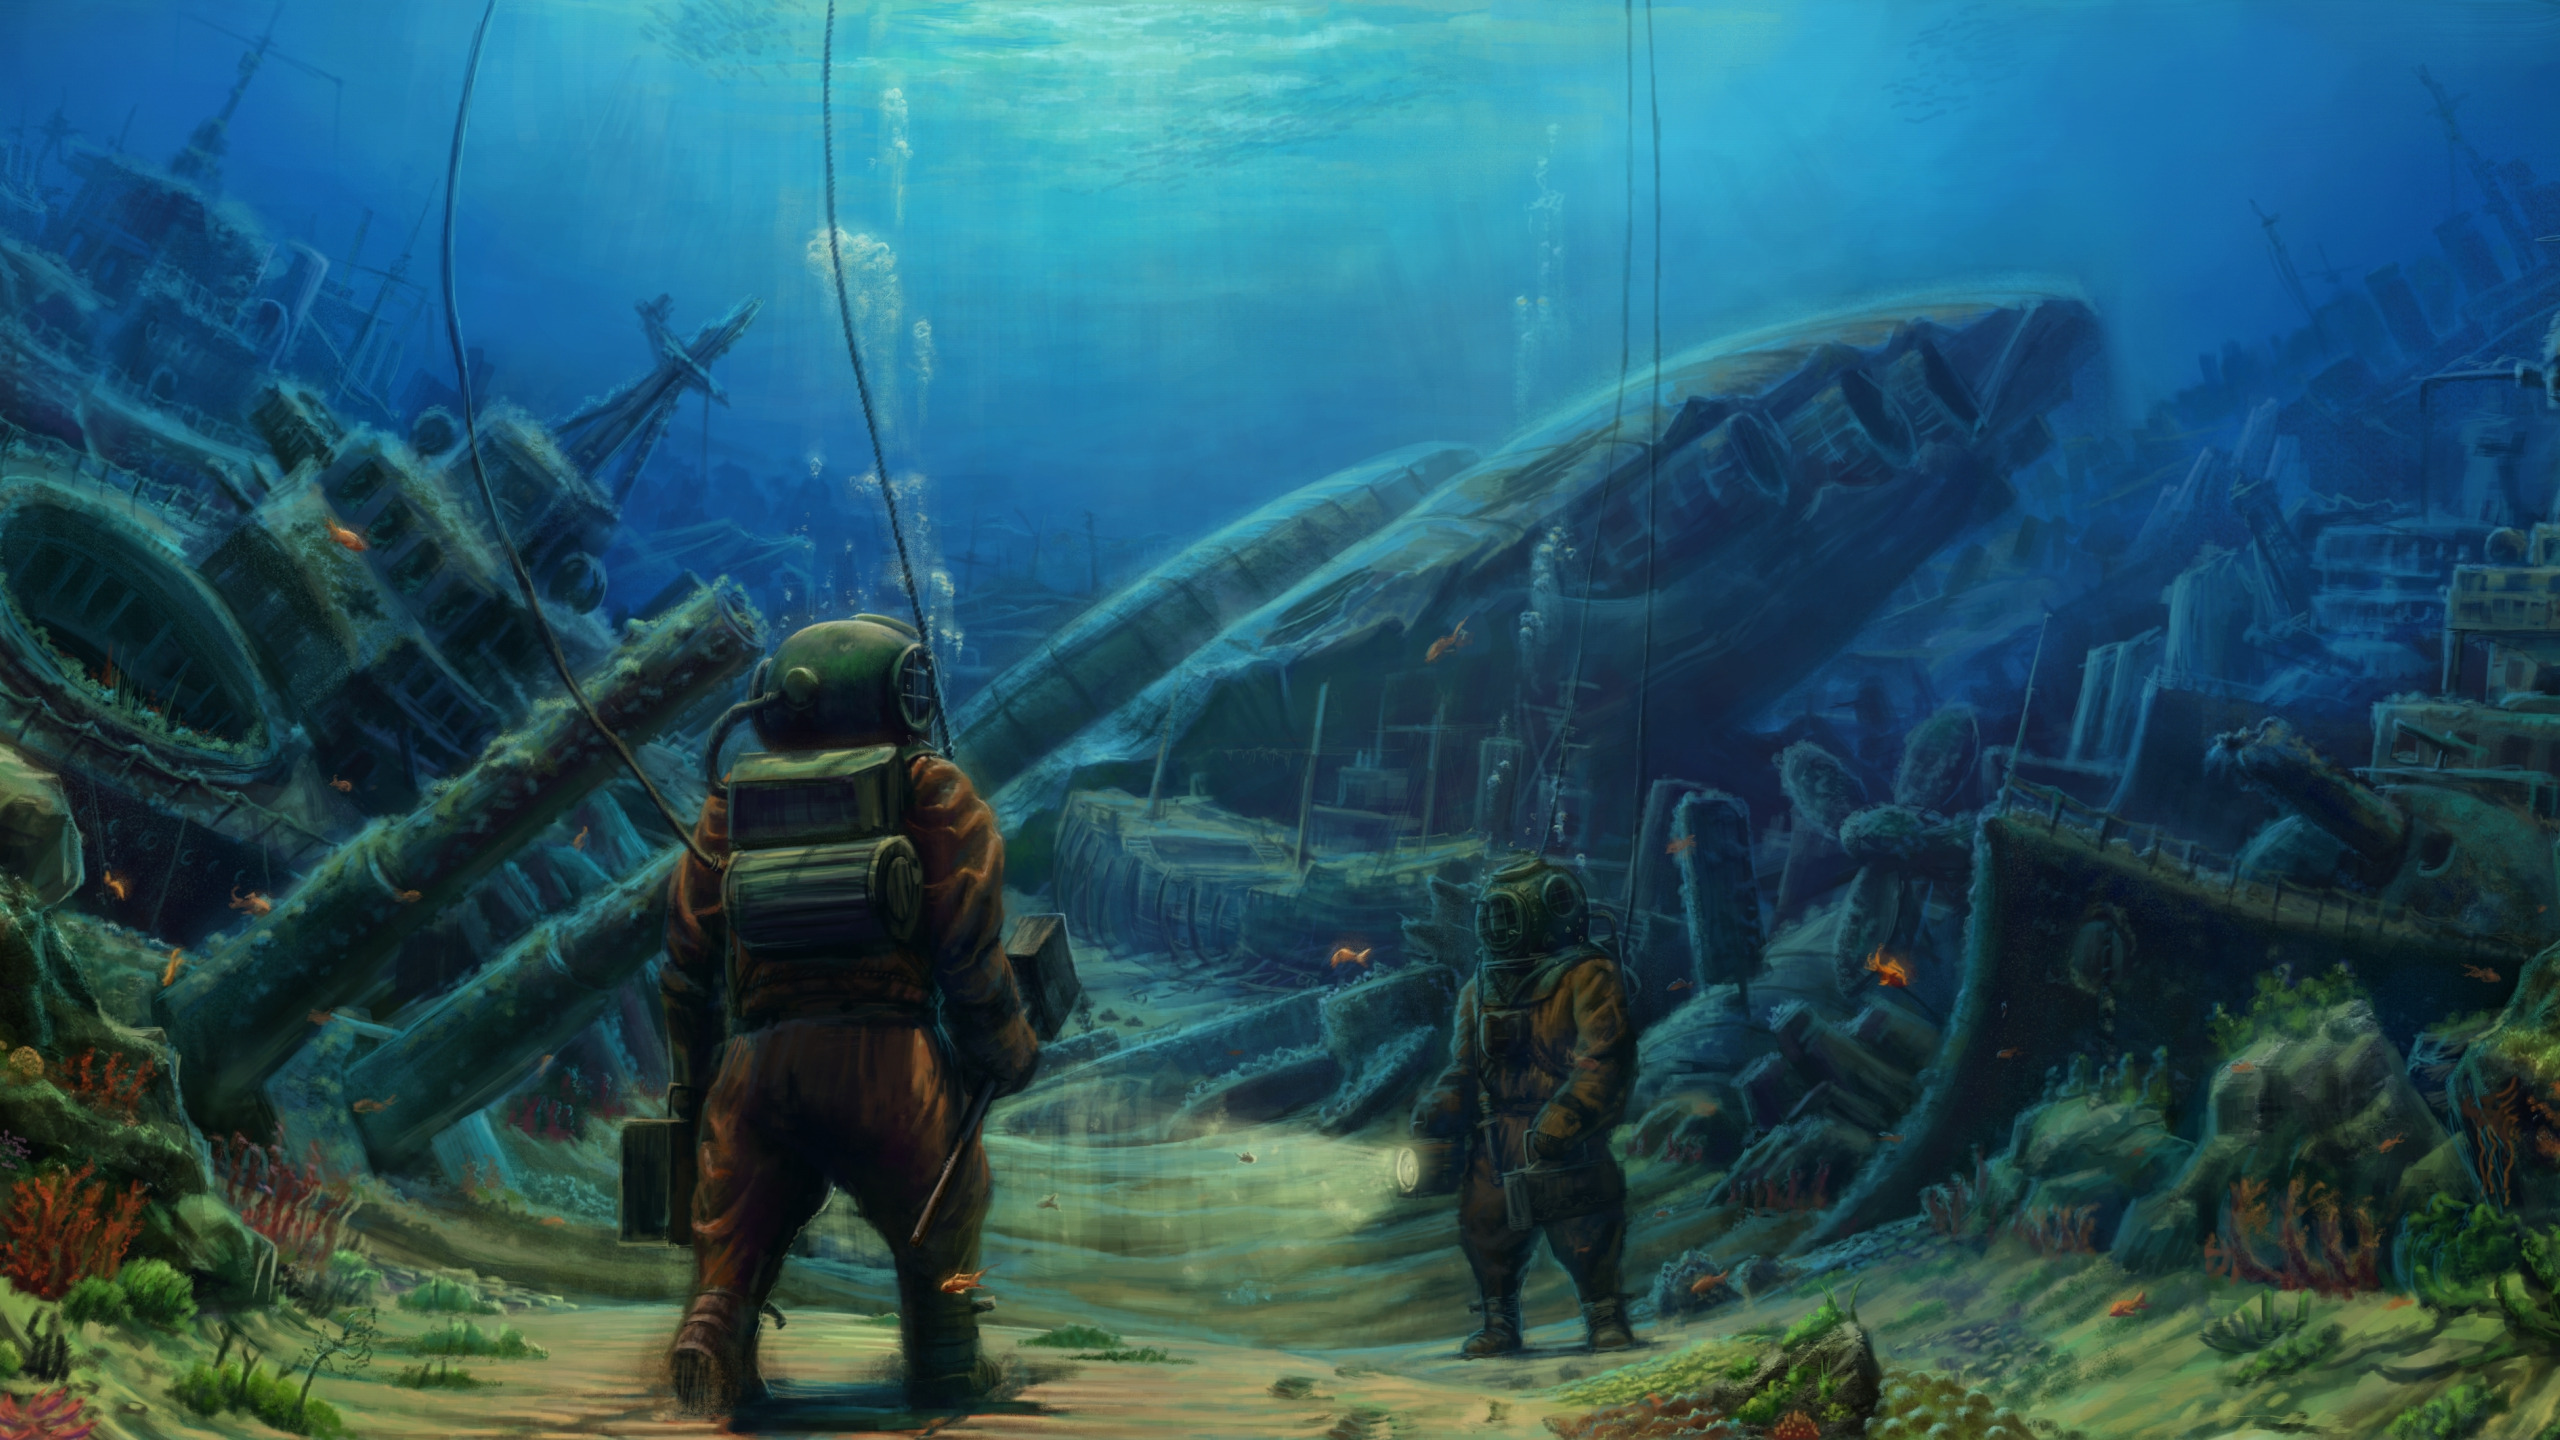 Depth wallpaper. Подводный мир с затонувшим кораблем. Игра про подводный мир. Подводный мир фэнтези. Затонувшие корабли фэнтези.